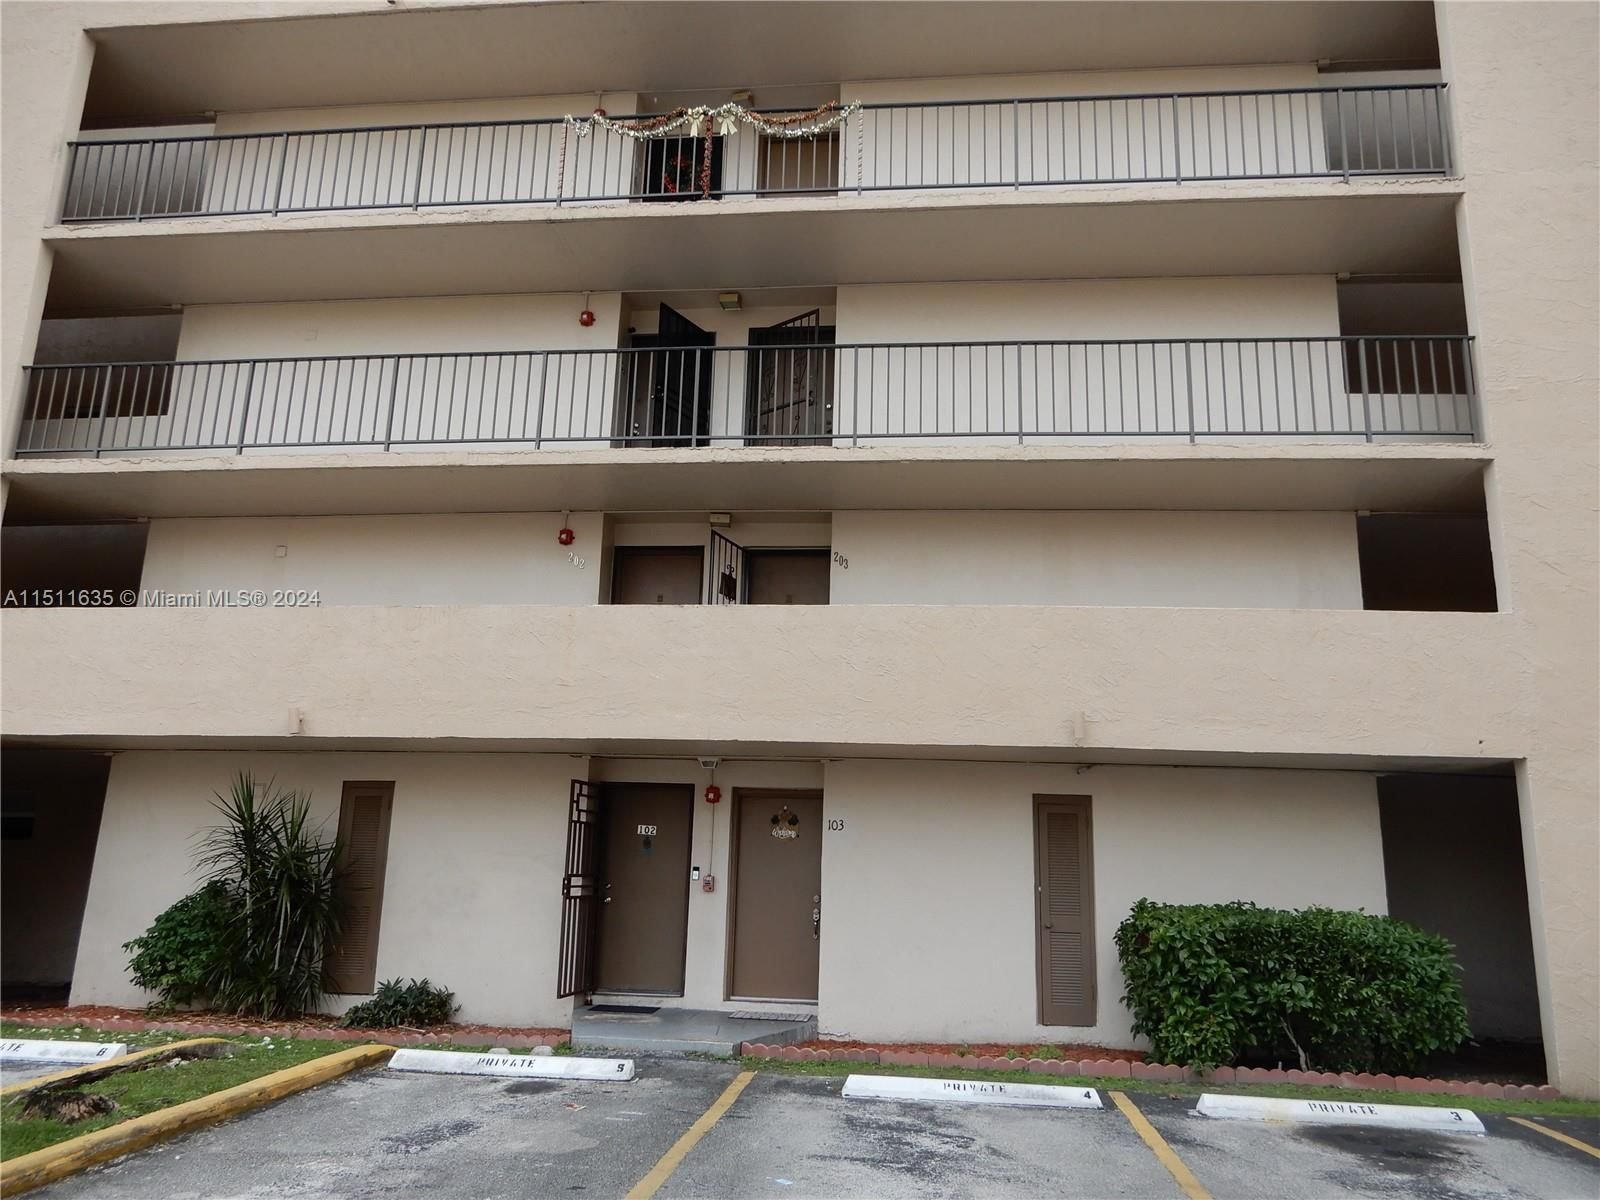 Real estate property located at 870 87th Ave #103, Miami-Dade County, PINEBARK CONDO NO 3, Miami, FL